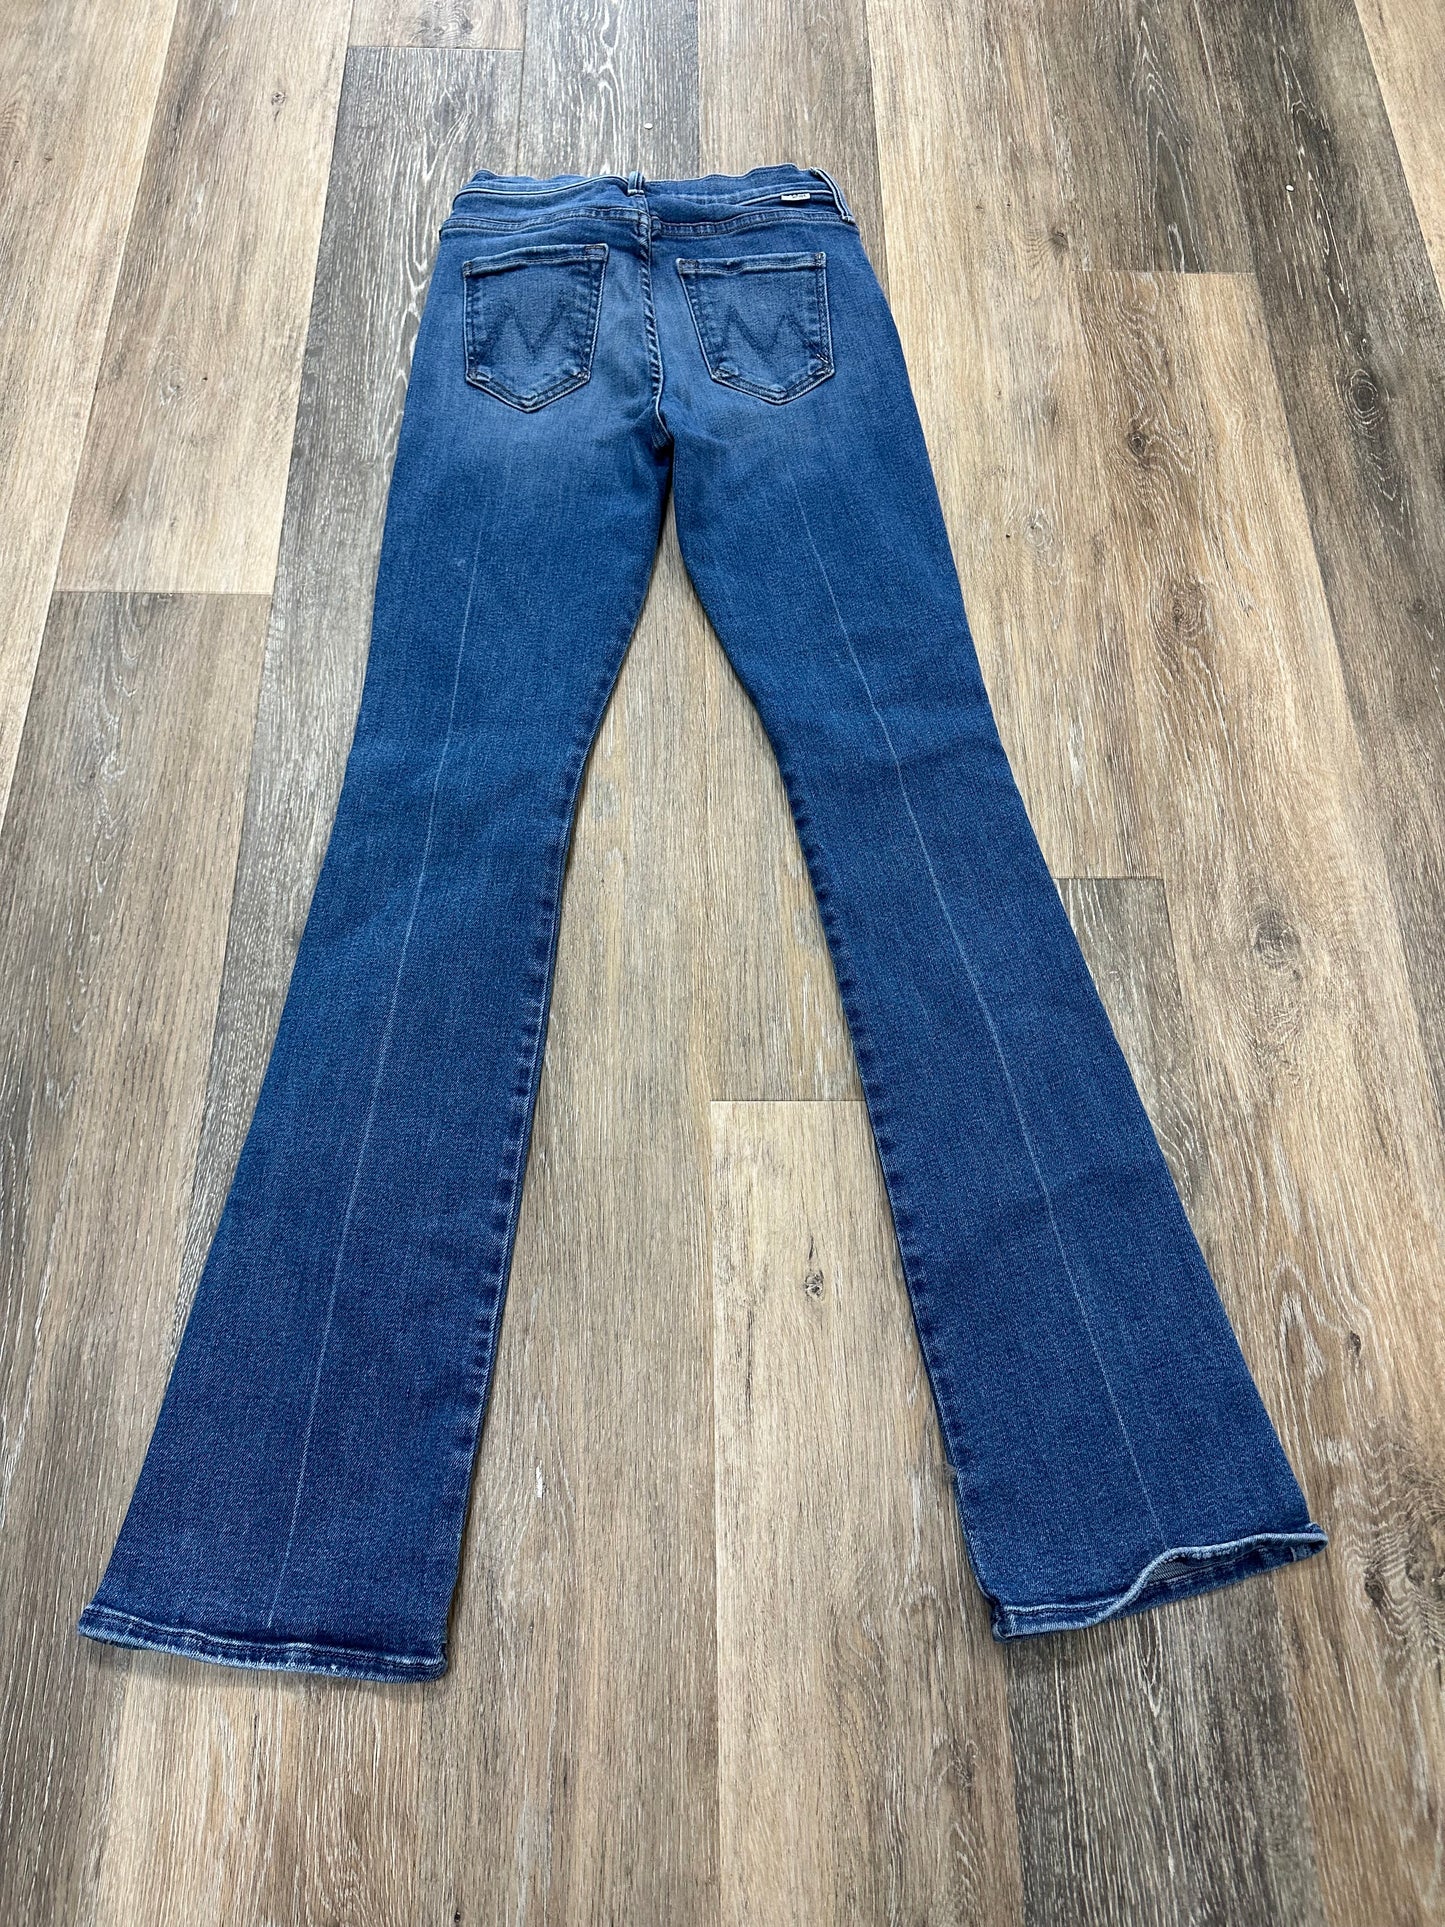 Blue Denim Jeans Designer Mother, Size 1